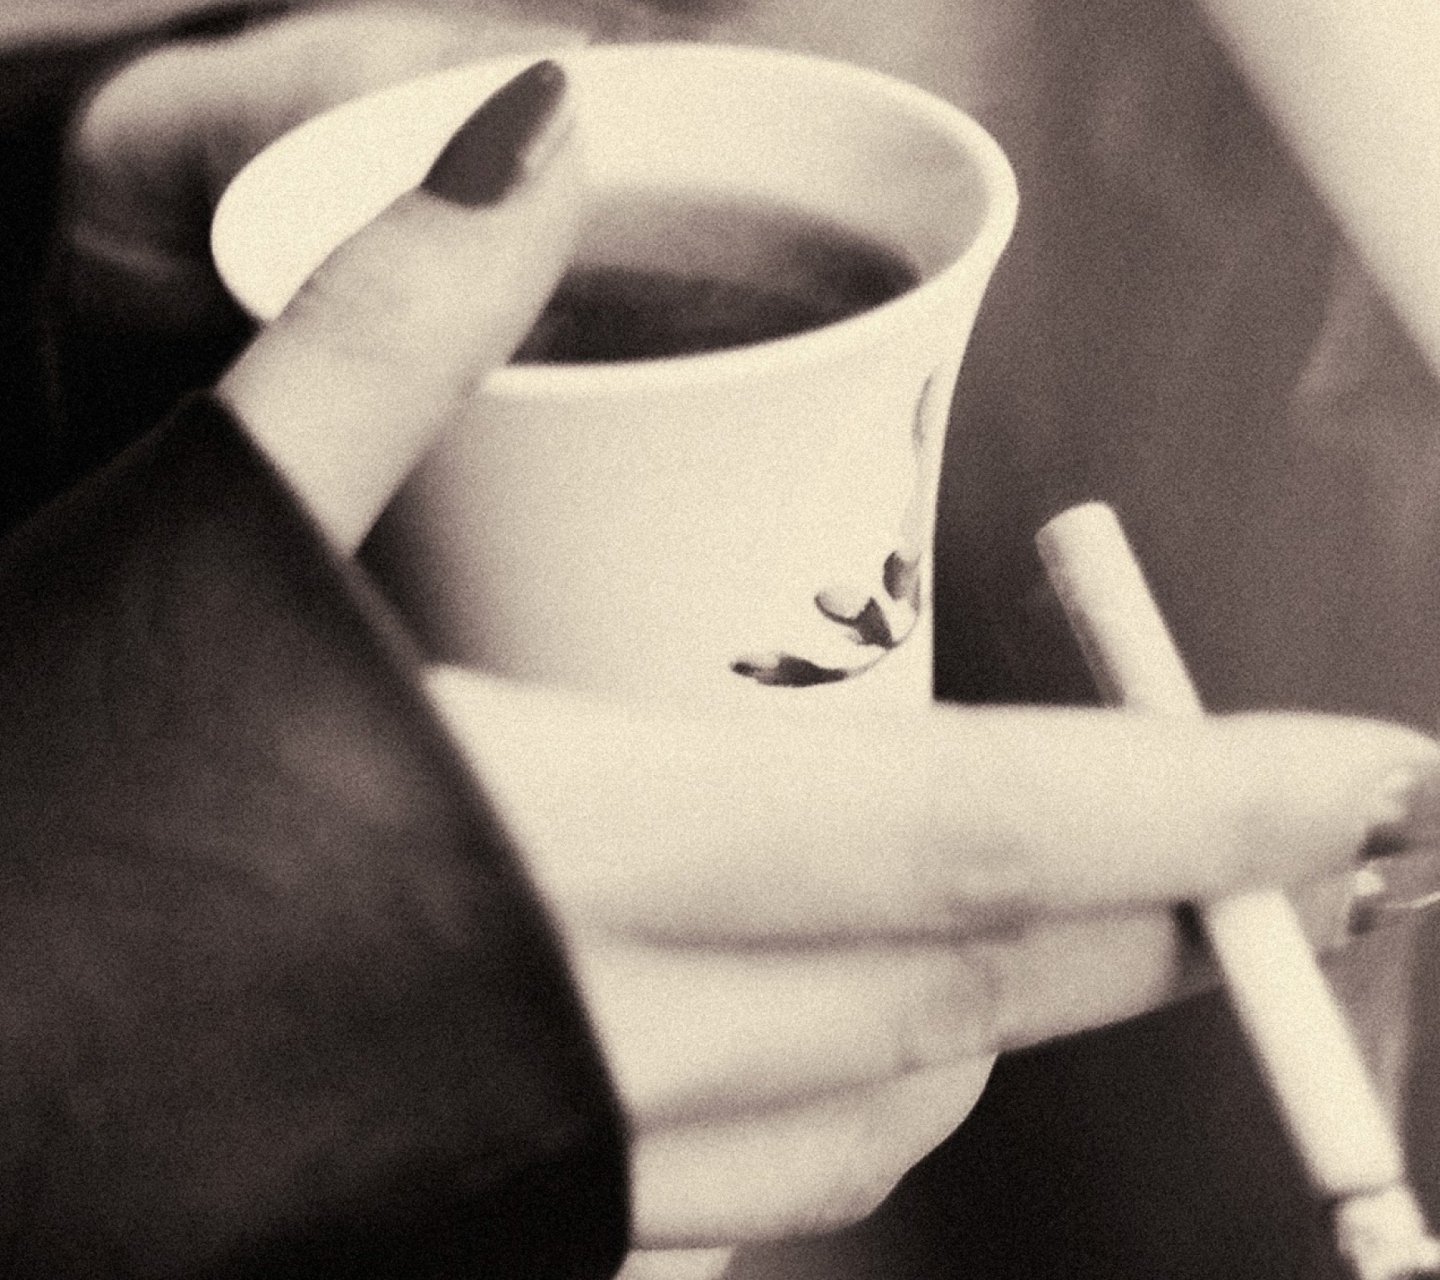 Hot Coffee In Her Hands screenshot #1 1440x1280